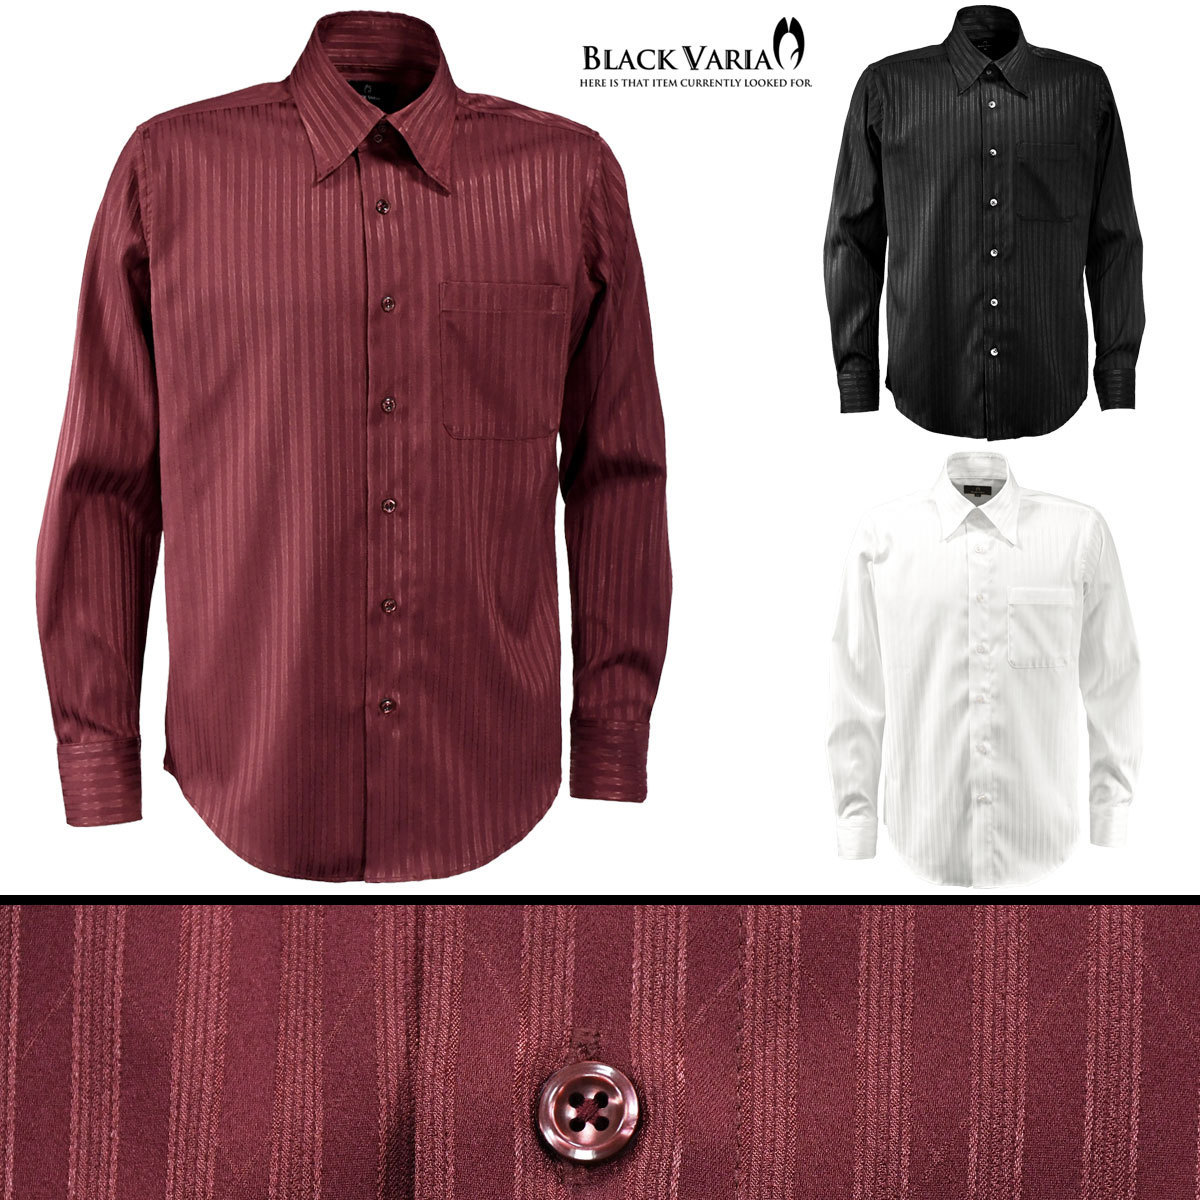 a191850-win BLACK VARIA ドゥエボットーニ ストライプ柄 ジャガード織柄[レギュラーカラー]サテンシャツ メンズ(ワインレッド赤) L_画像4